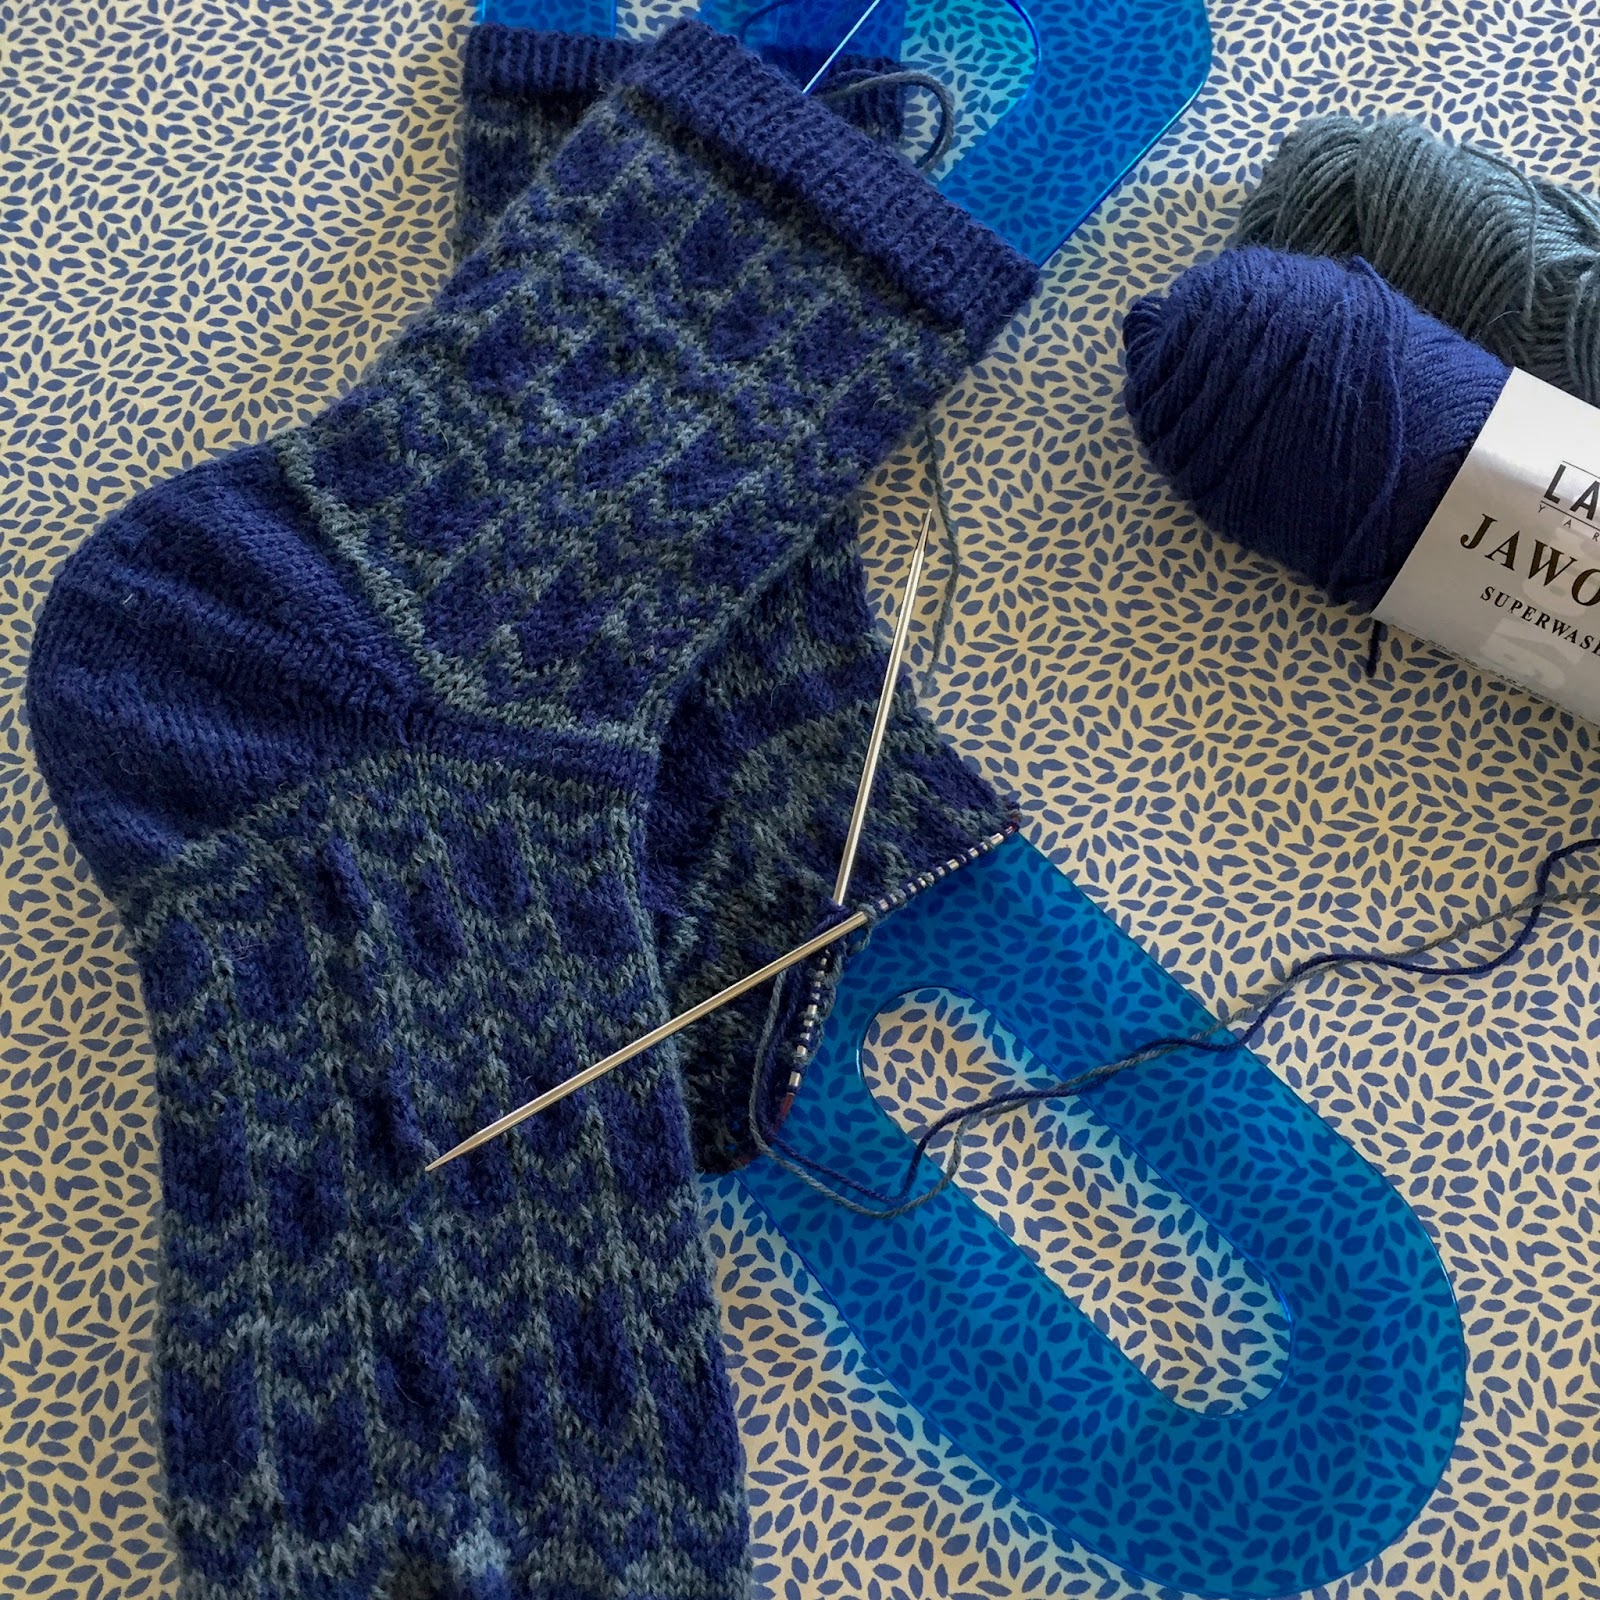 Knitting By Kaae: Sådan du sokkeblokkere og er de gode at have